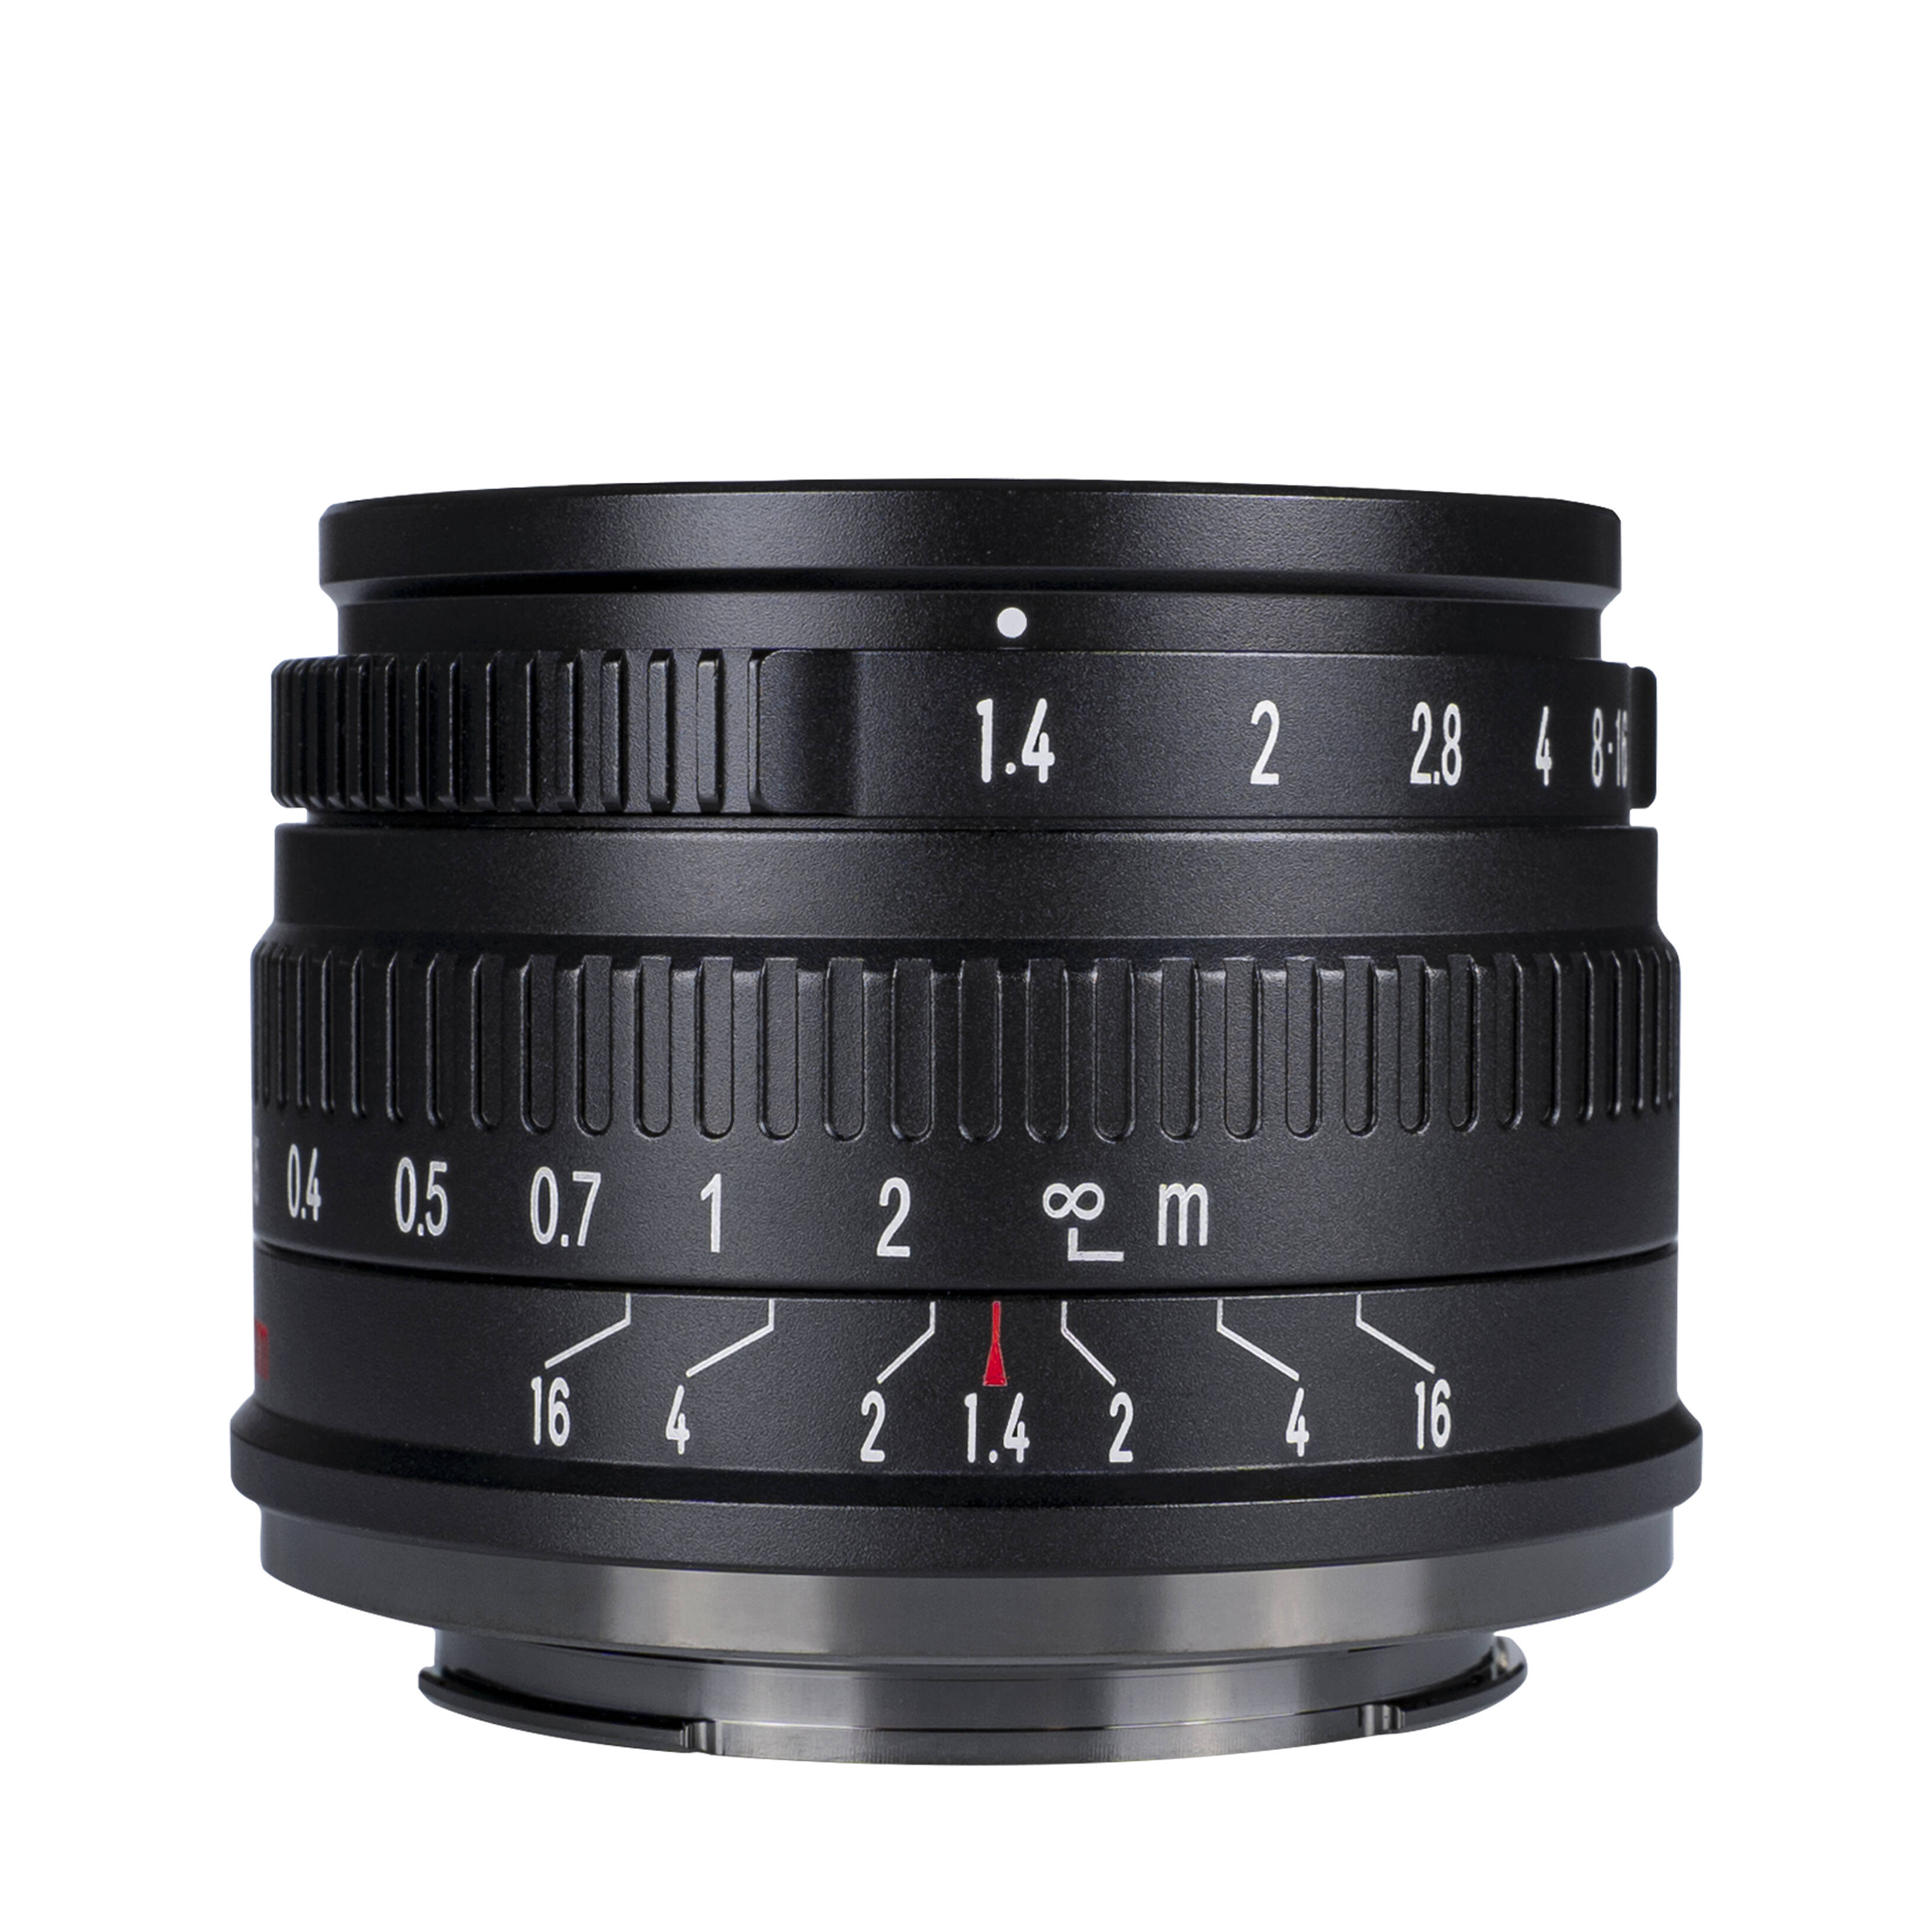 7artisans photoélectrique 35 mm f / 1,4 objectif pour le support Nikon Z